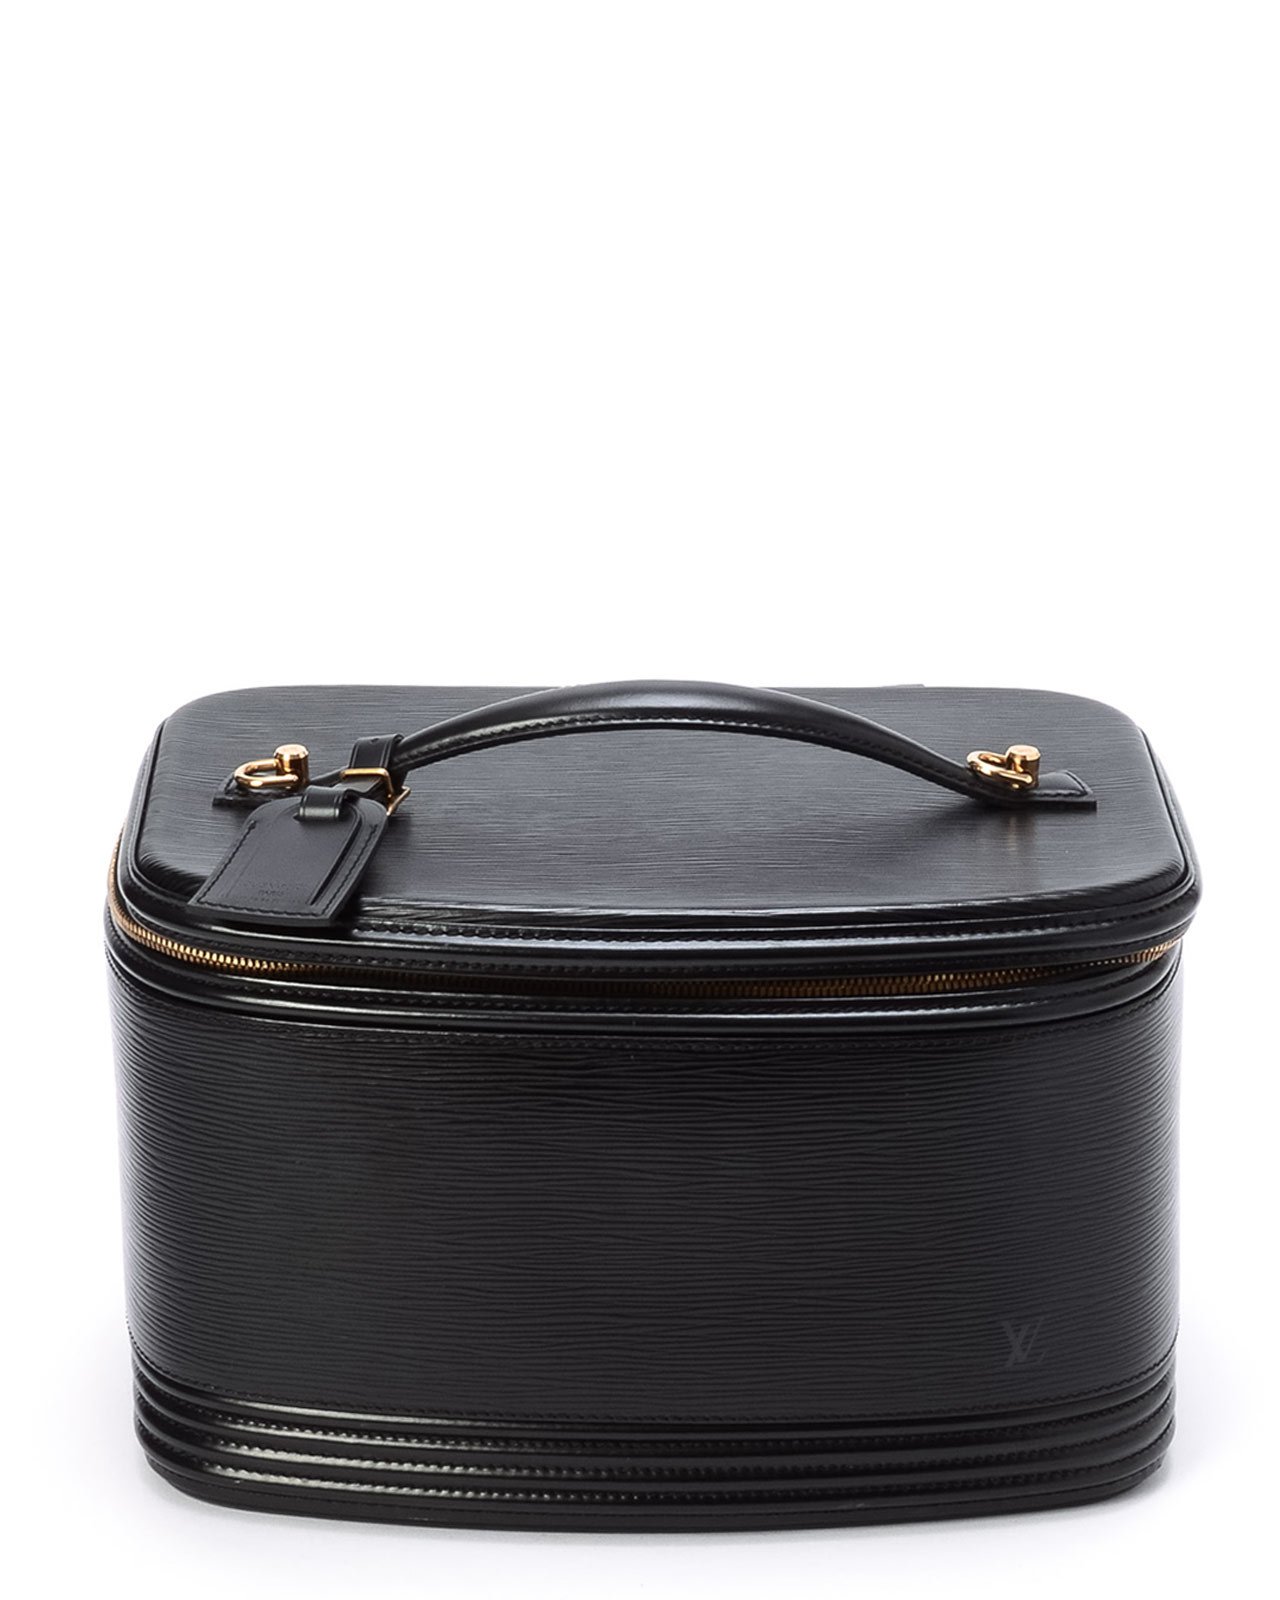 Lyst - Louis Vuitton Epi Nice Vanity Bag in Black